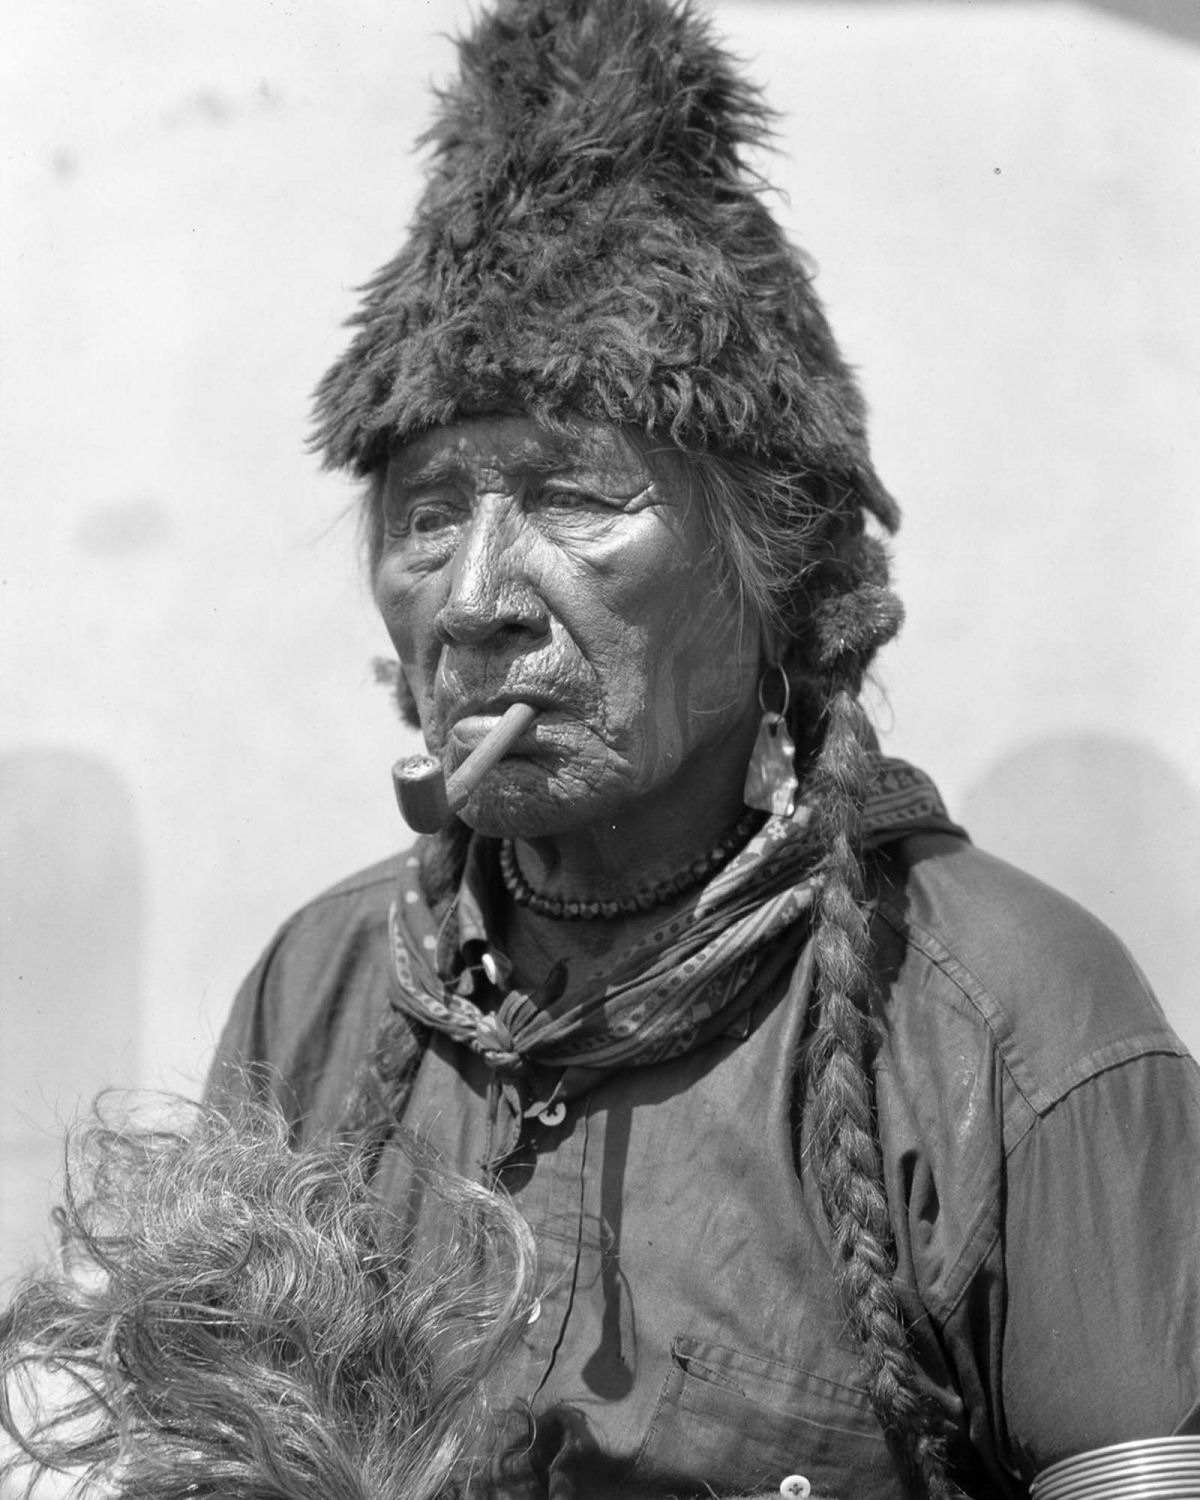 Os nativos das Primeiras Nações do Canadá em fotos históricas raras 25